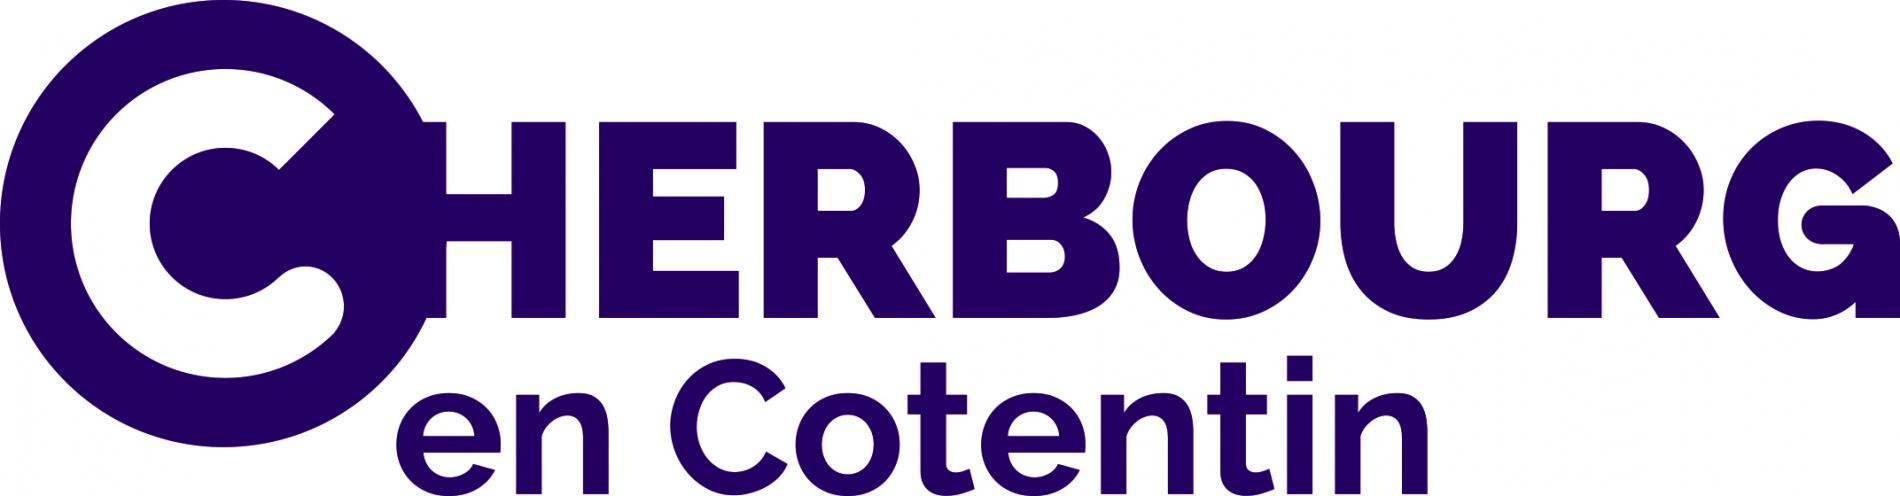 Logo de Cherbourg en Cotentin